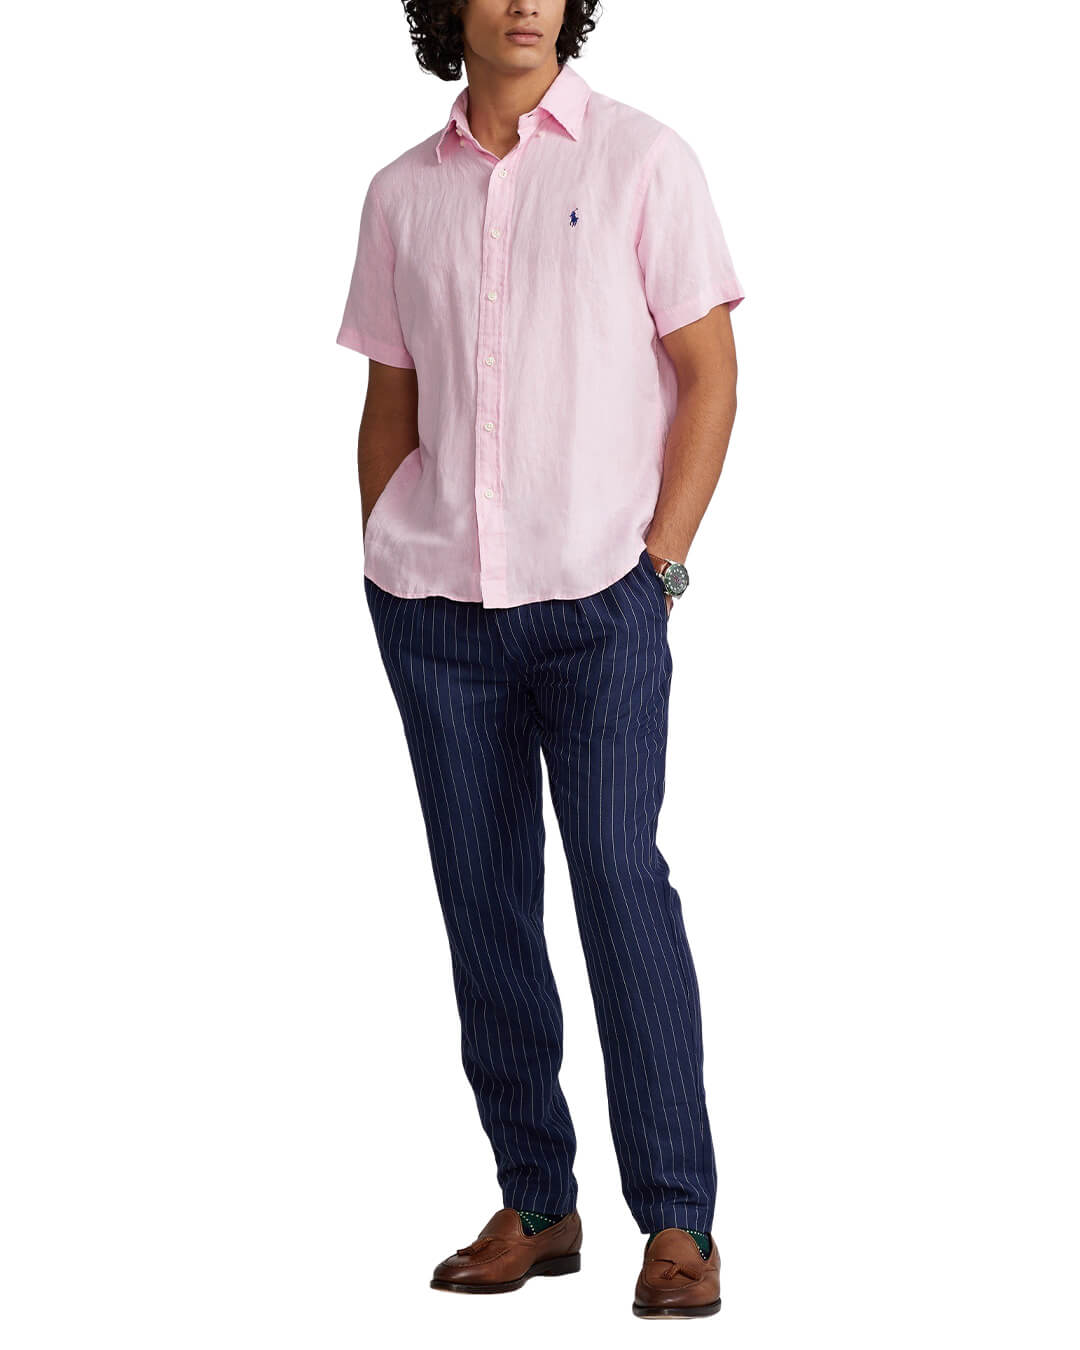 Polo Ralph Lauren Shirts Polo Ralph Lauren Slim Fit Pink Classic Linen Shirt